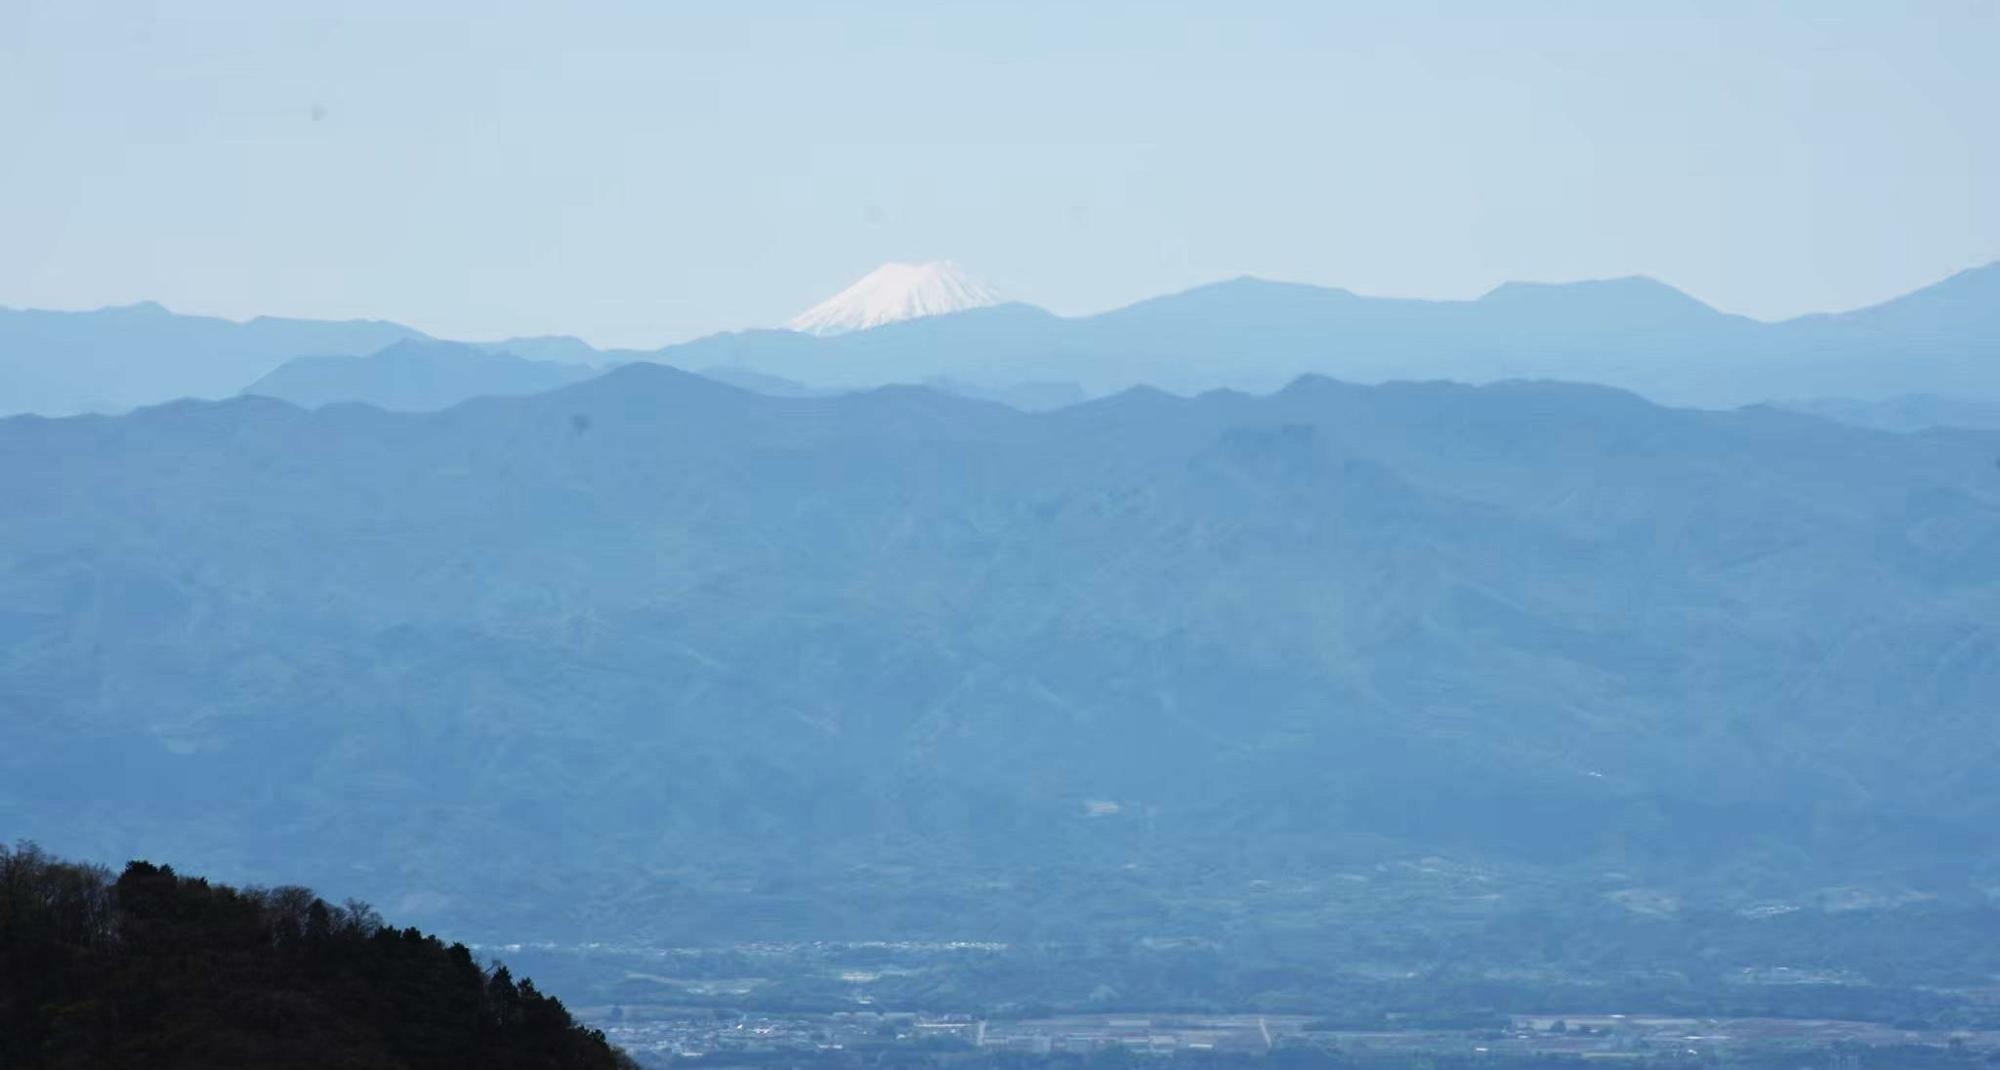 中央奥に真白な富士山の山頂が見えます